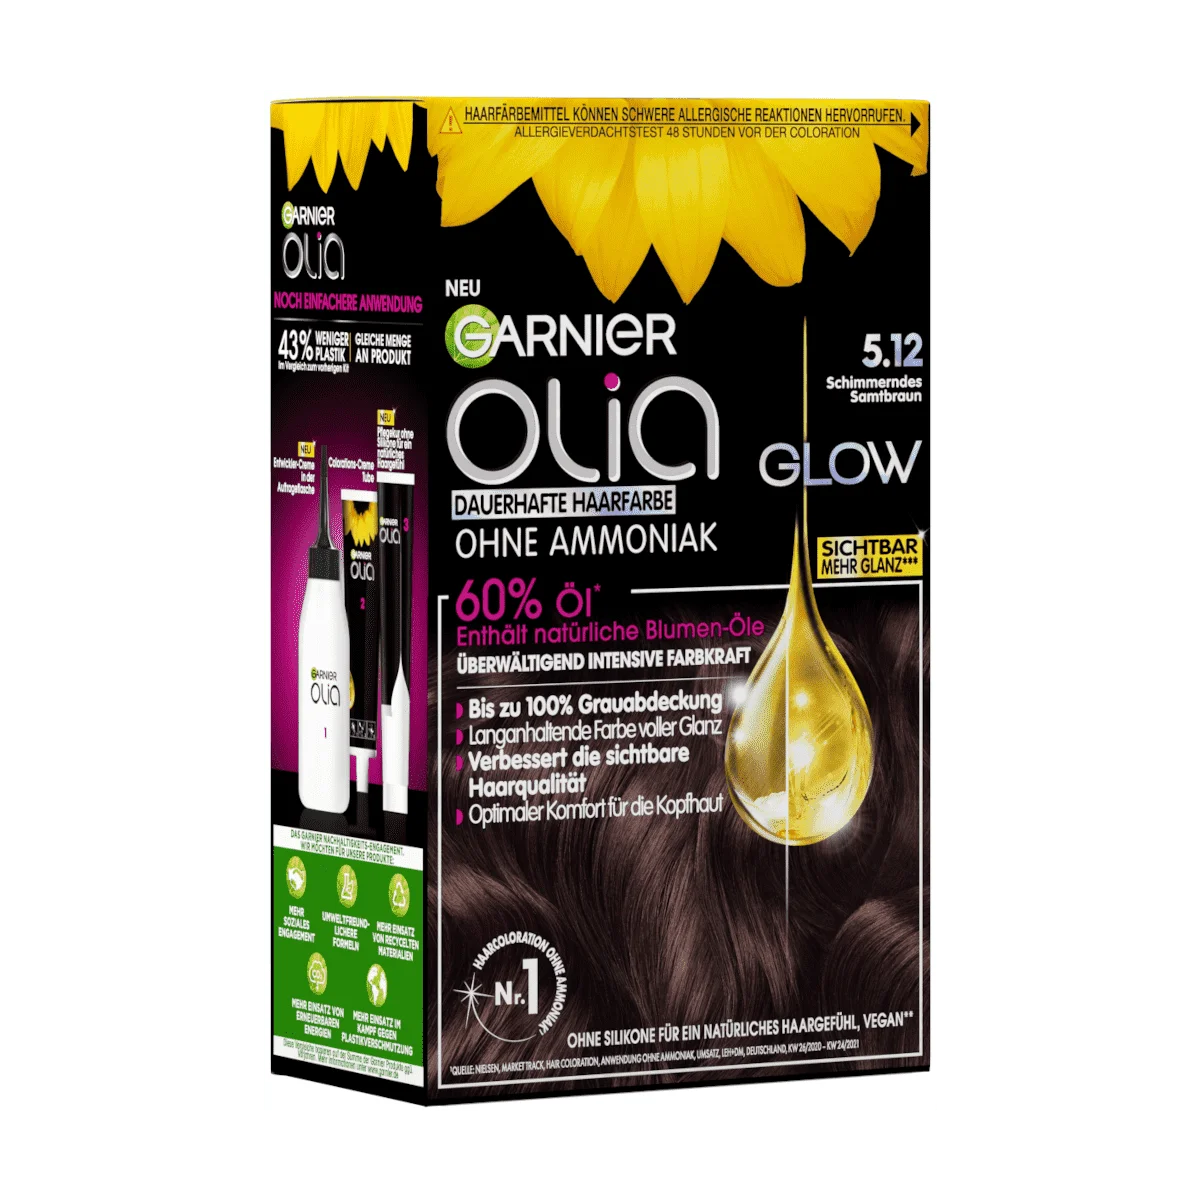 Garnier Olia Glow Haarfarbe 5.12 Schimmerndes Samtbraun